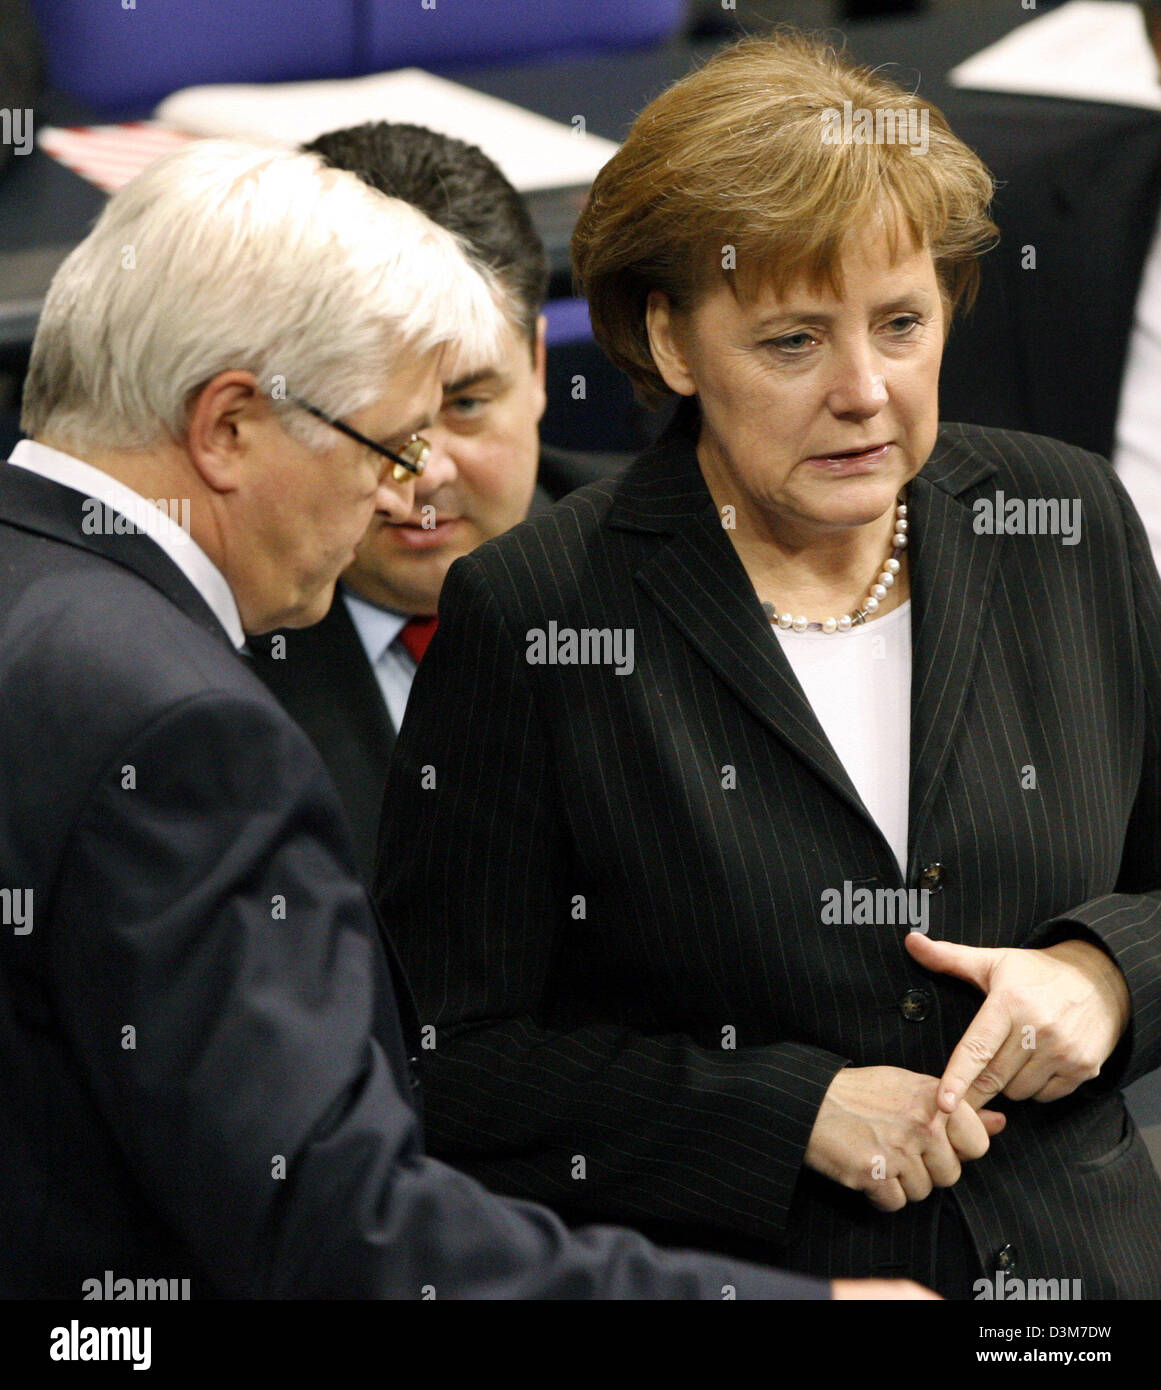 (Dpa) - Il cancelliere tedesco Angela Merkel (CDU) (R) e il ministro degli Esteri Frank-Walter Steinmeier (SPD) (L) a parlare tra di loro nel corso di un dibattito parlamentare presso il tedesco della camera bassa del Parlamento Bundestag a Berlino, il Mercoledì, 14 dicembre 2005. Sullo sfondo il tedesco il Ministro dell'ambiente Sigmar GABRIEL (SPD). La Germania non ha avuto alcuna parte in noi il rapimento di un cittadino tedesco che wa Foto Stock